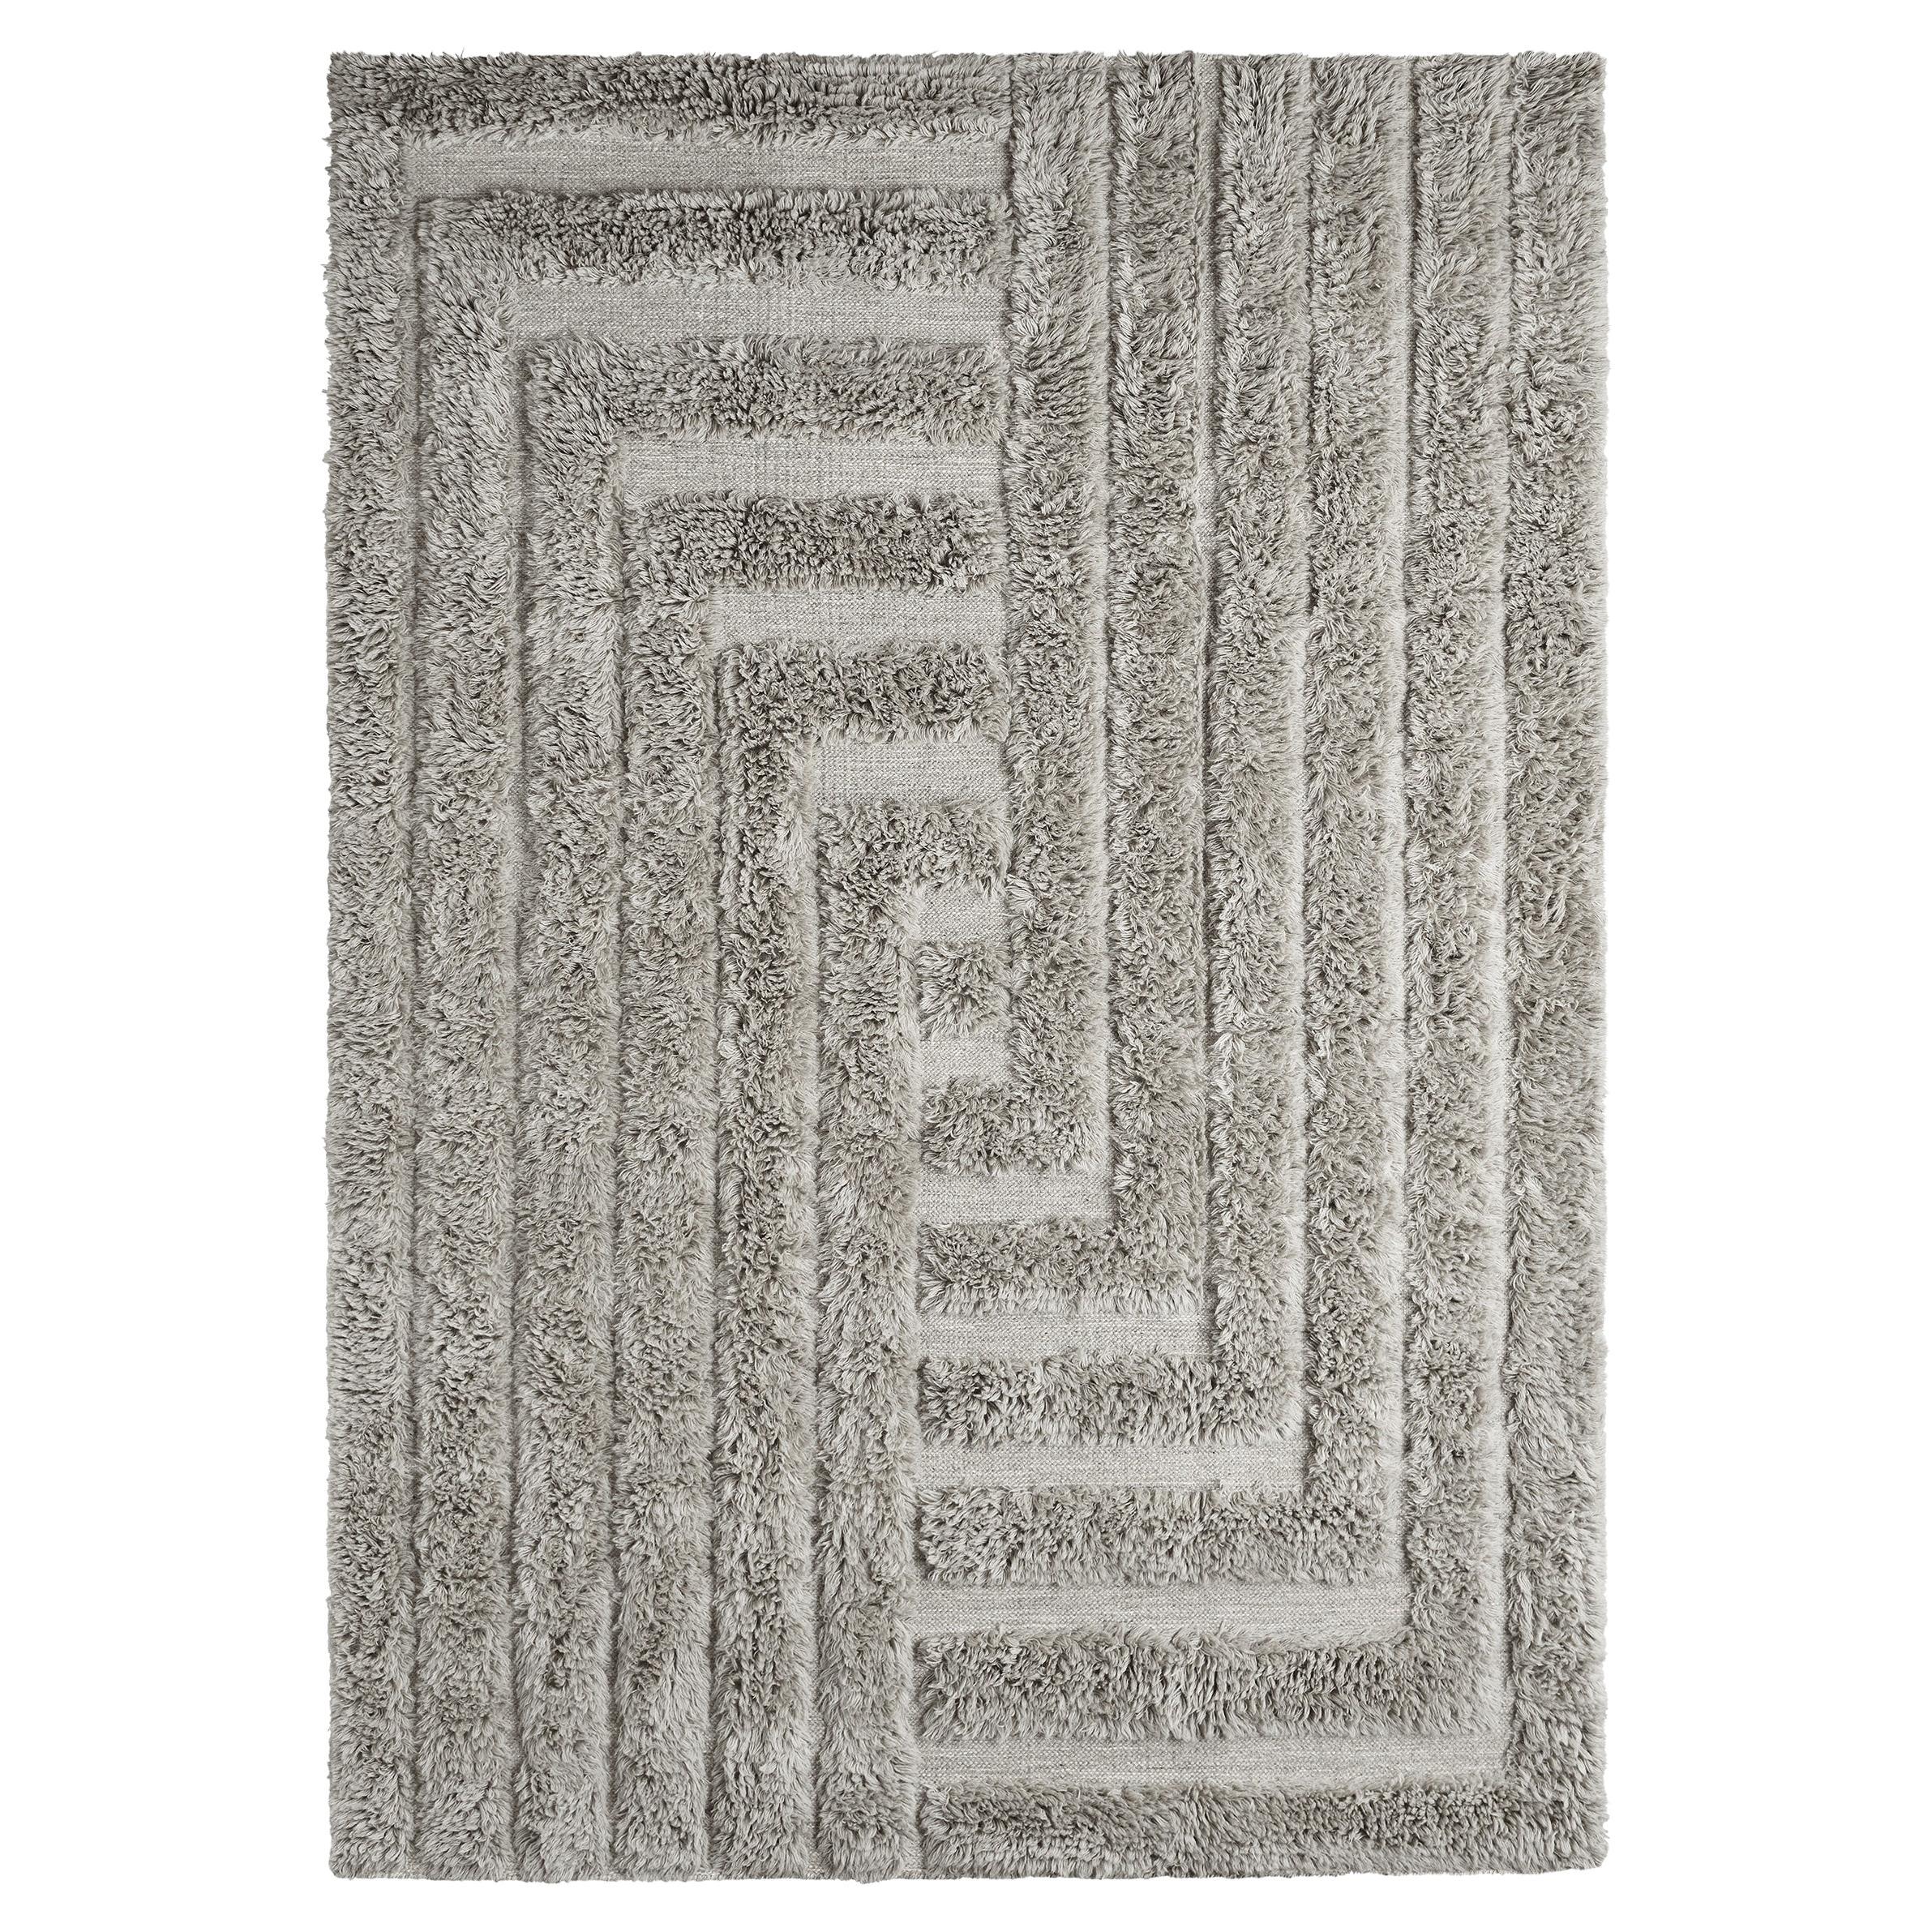 Tapis en laine du Labyrinthe gris épais tissé à la main, grand format